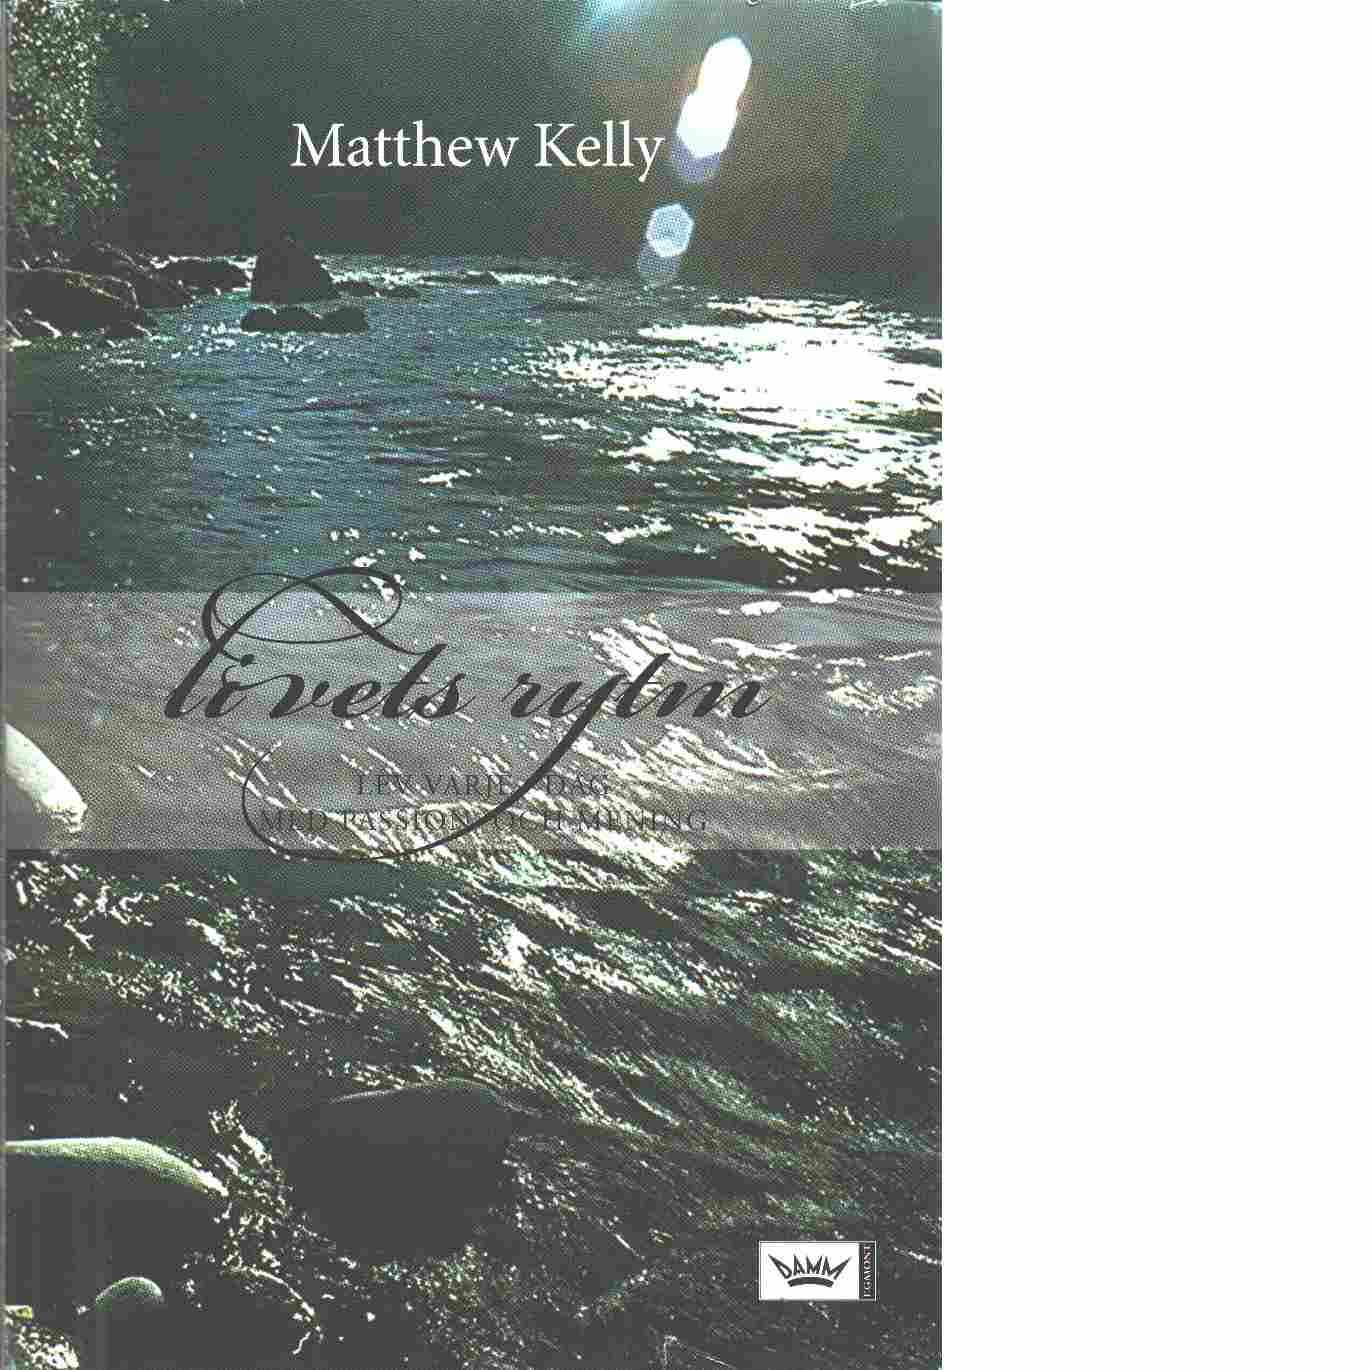 Kelly, Matthew "Livets rytm : lev varje dag med passion och mening" INBUNDEN